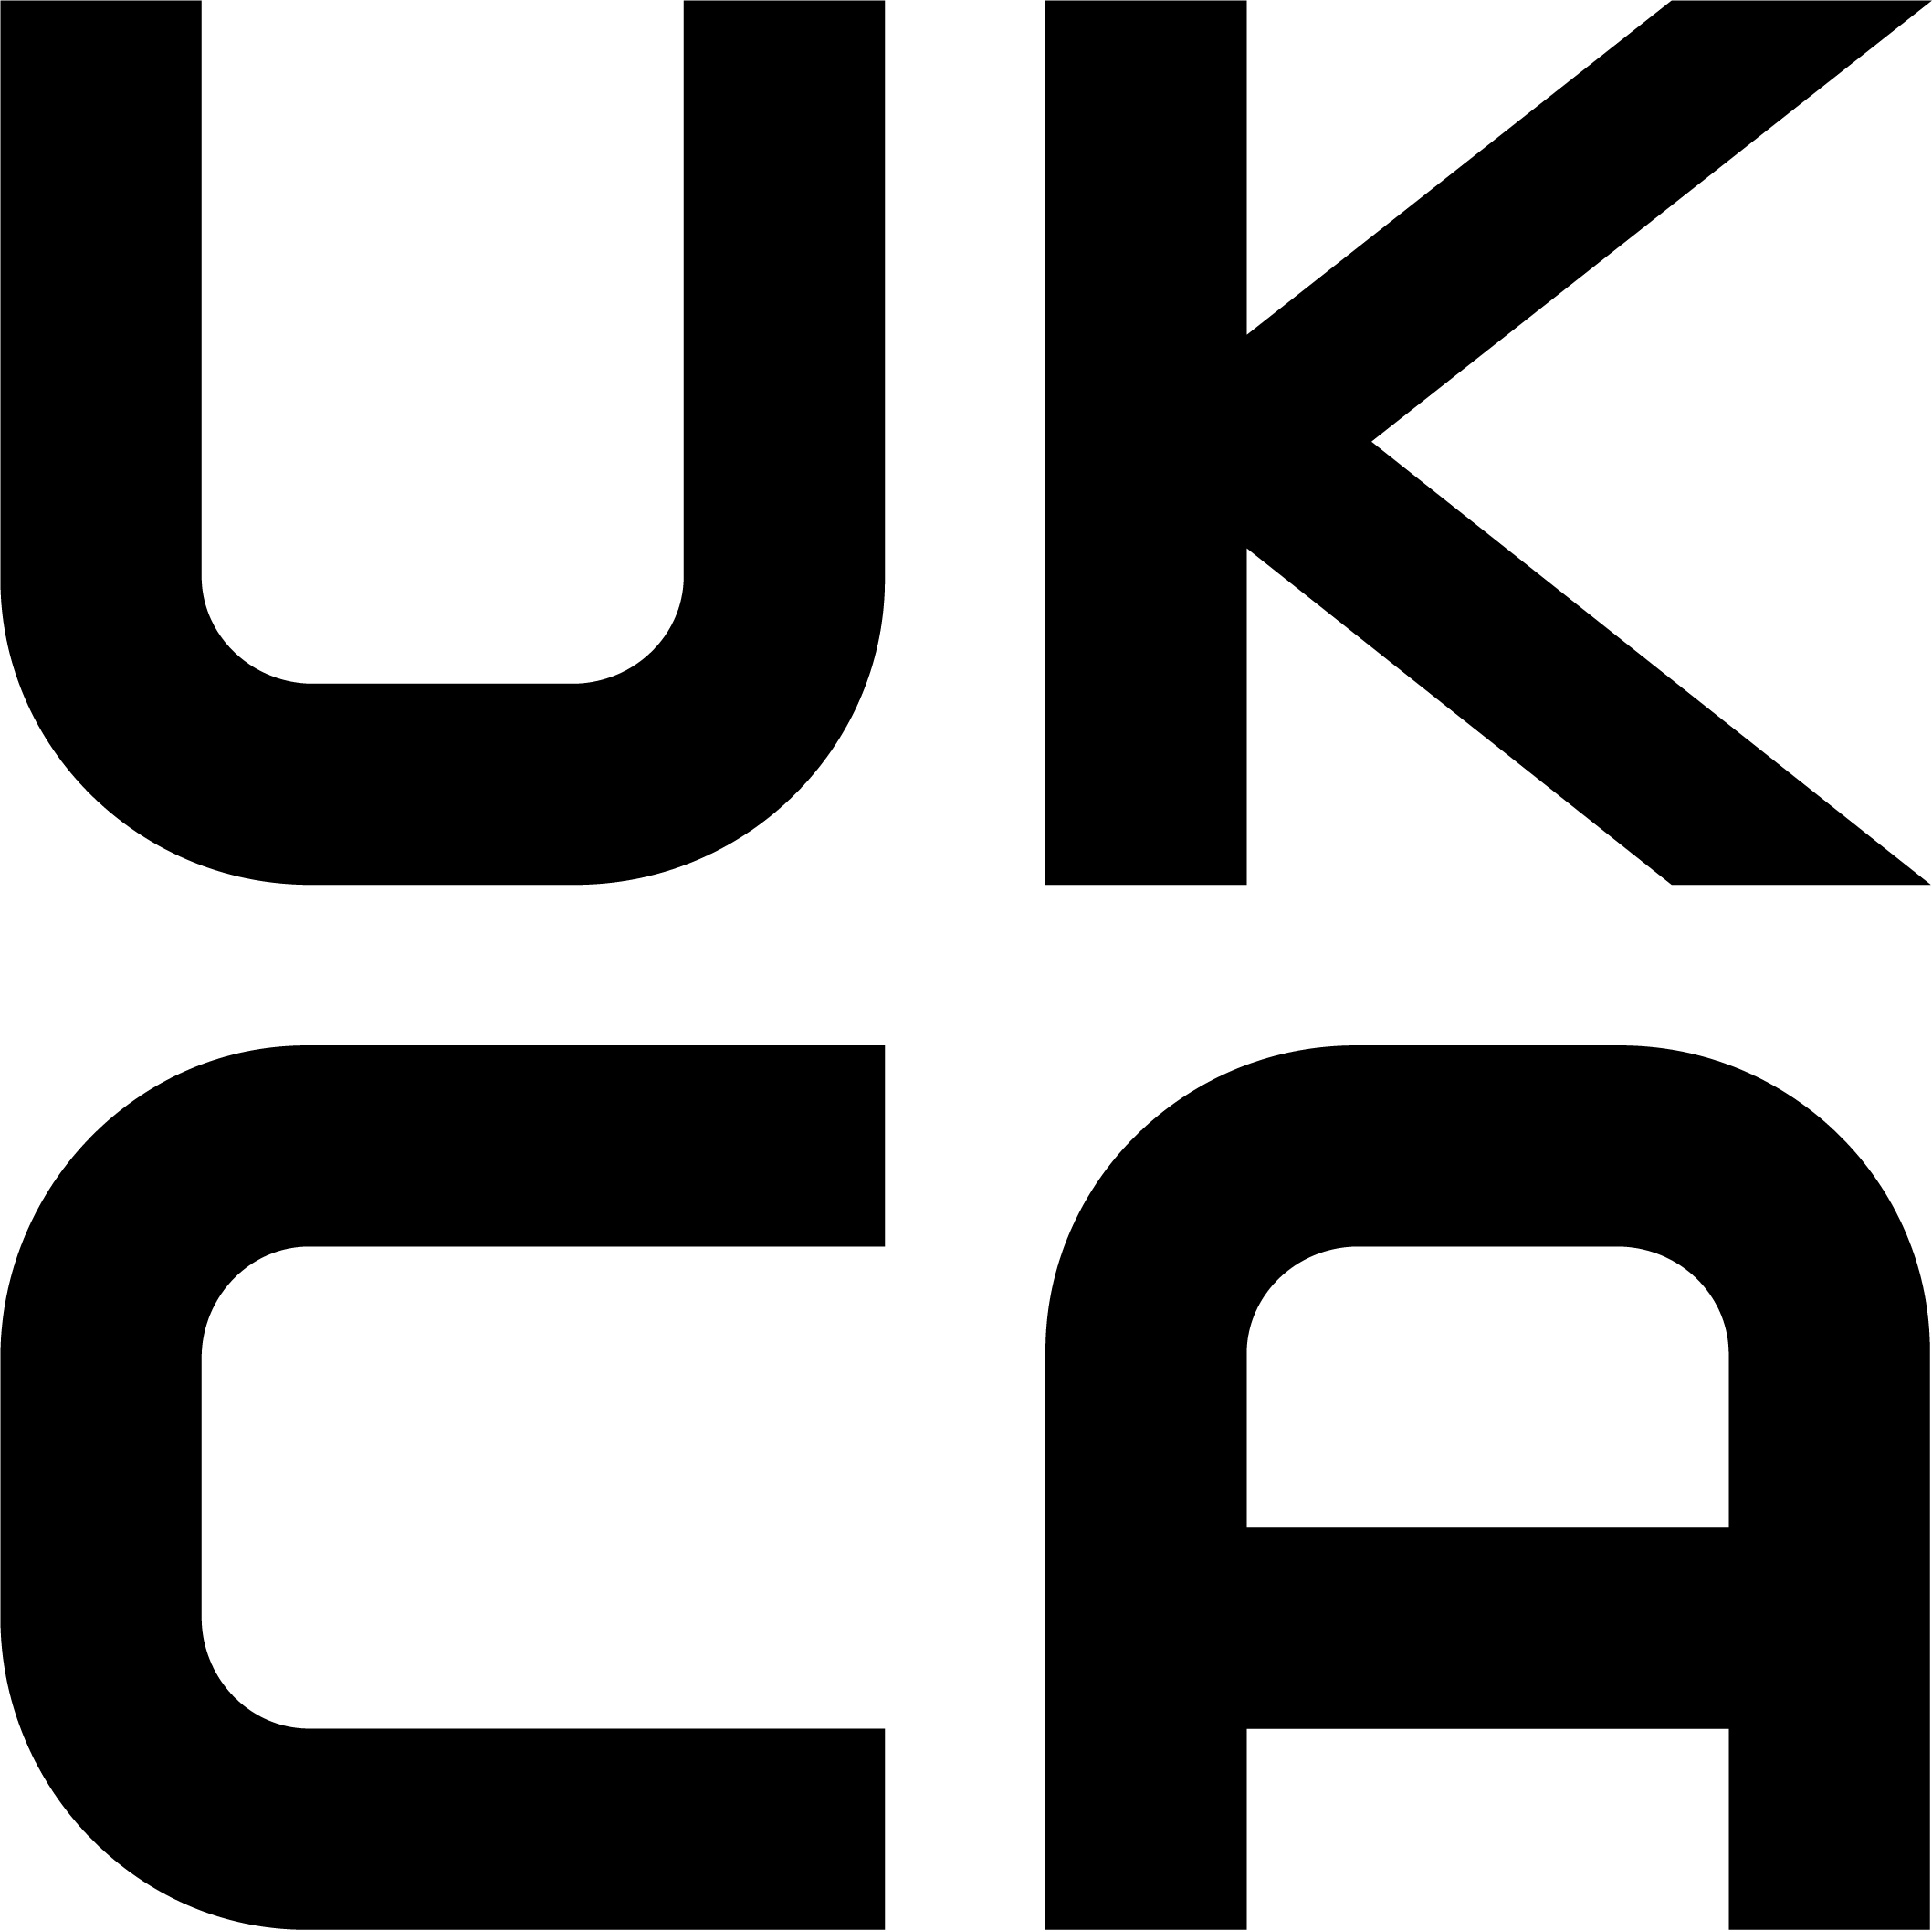 UKCA safework